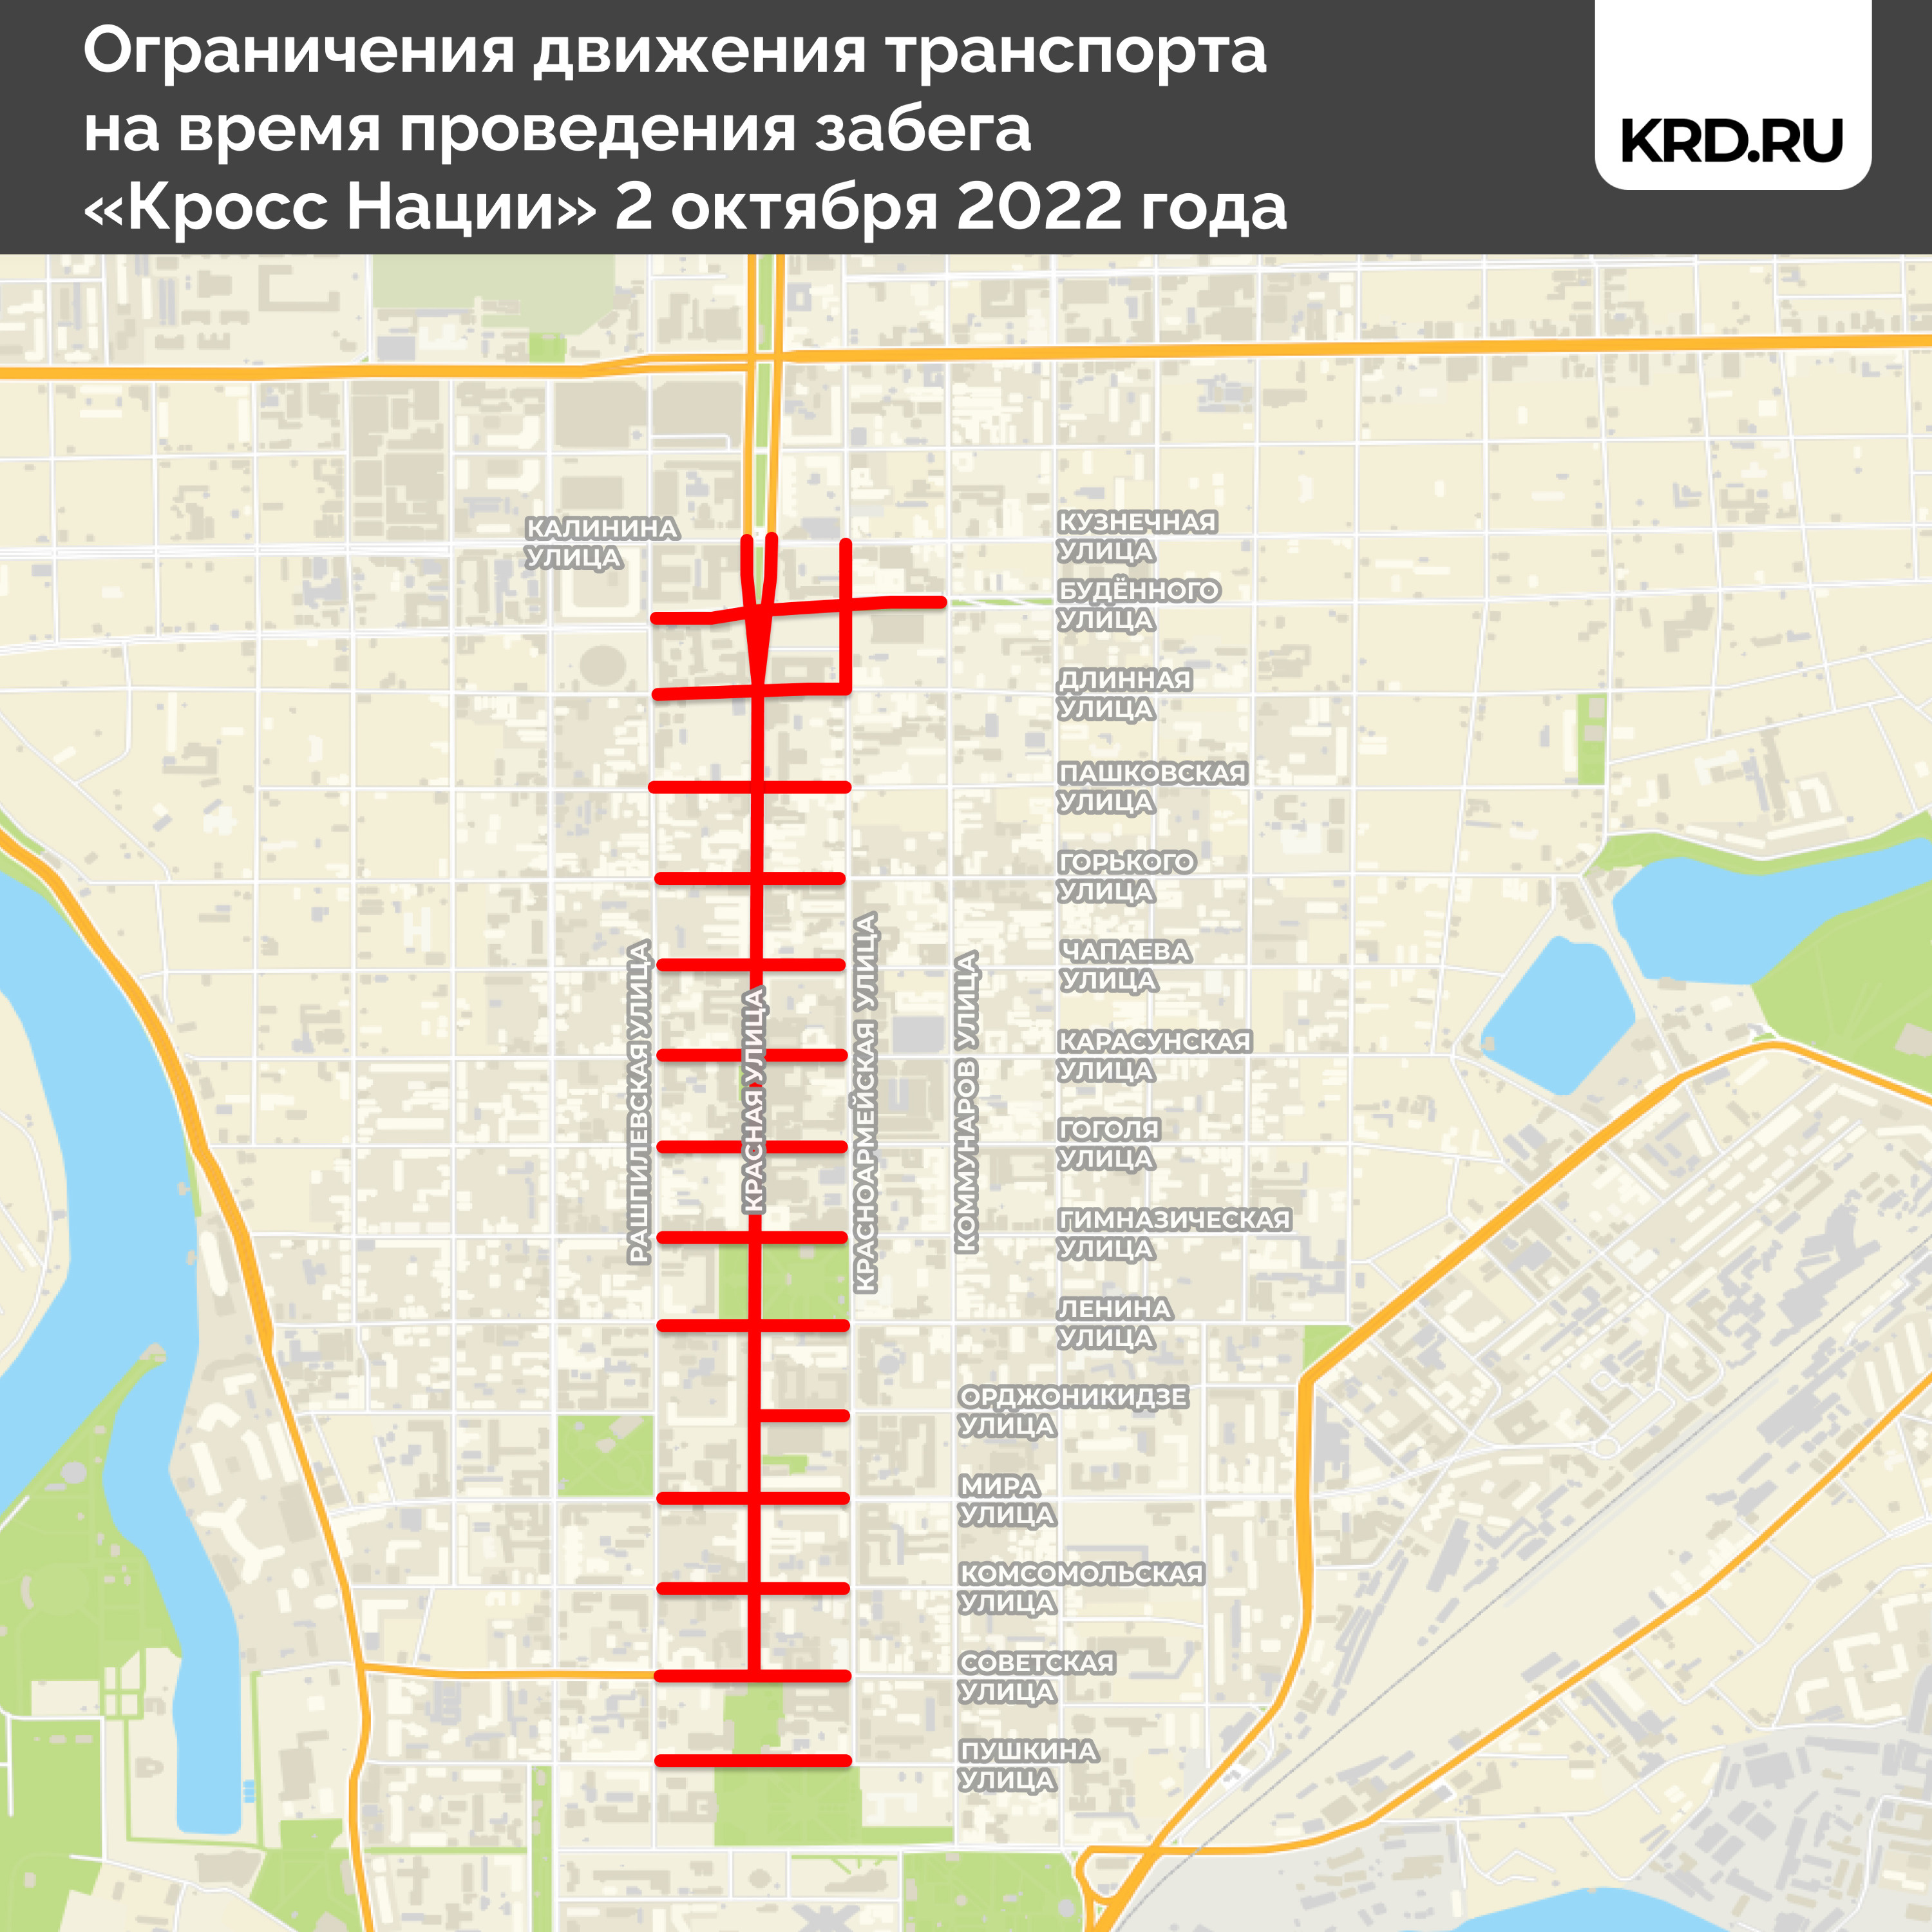 Схема перекрытия улицы Красной во время забега